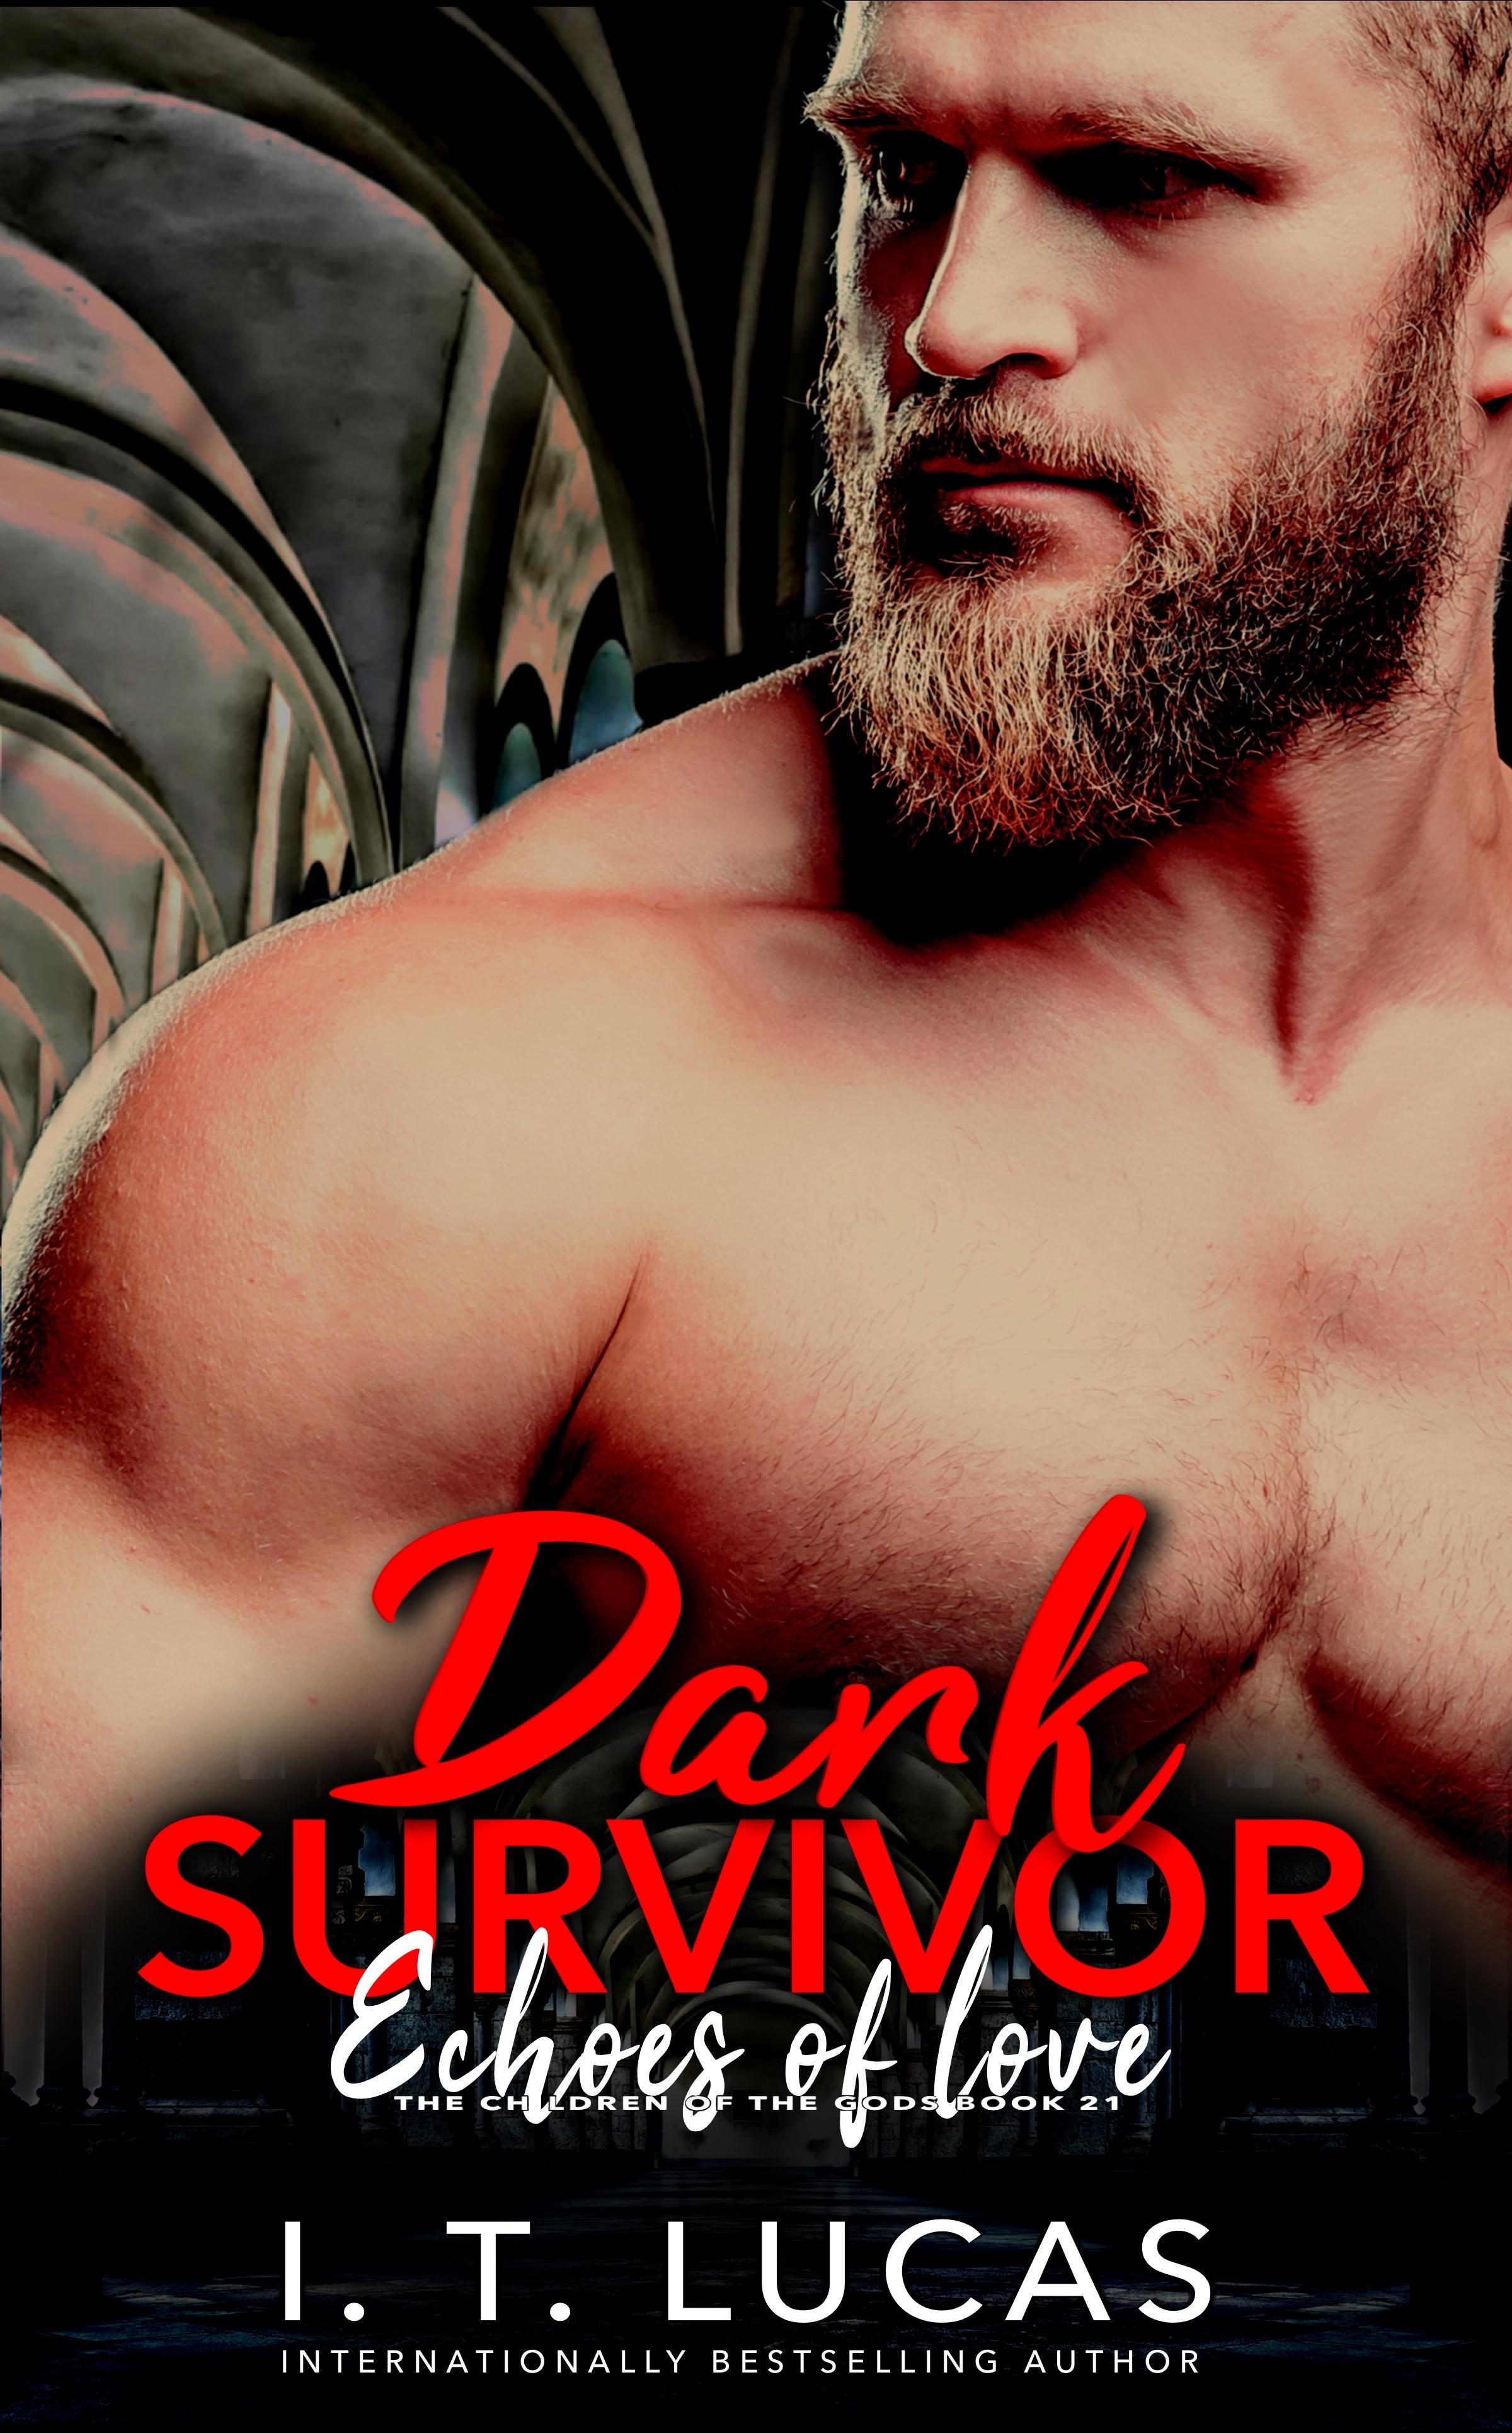 Dark Survivor Echoes of Love